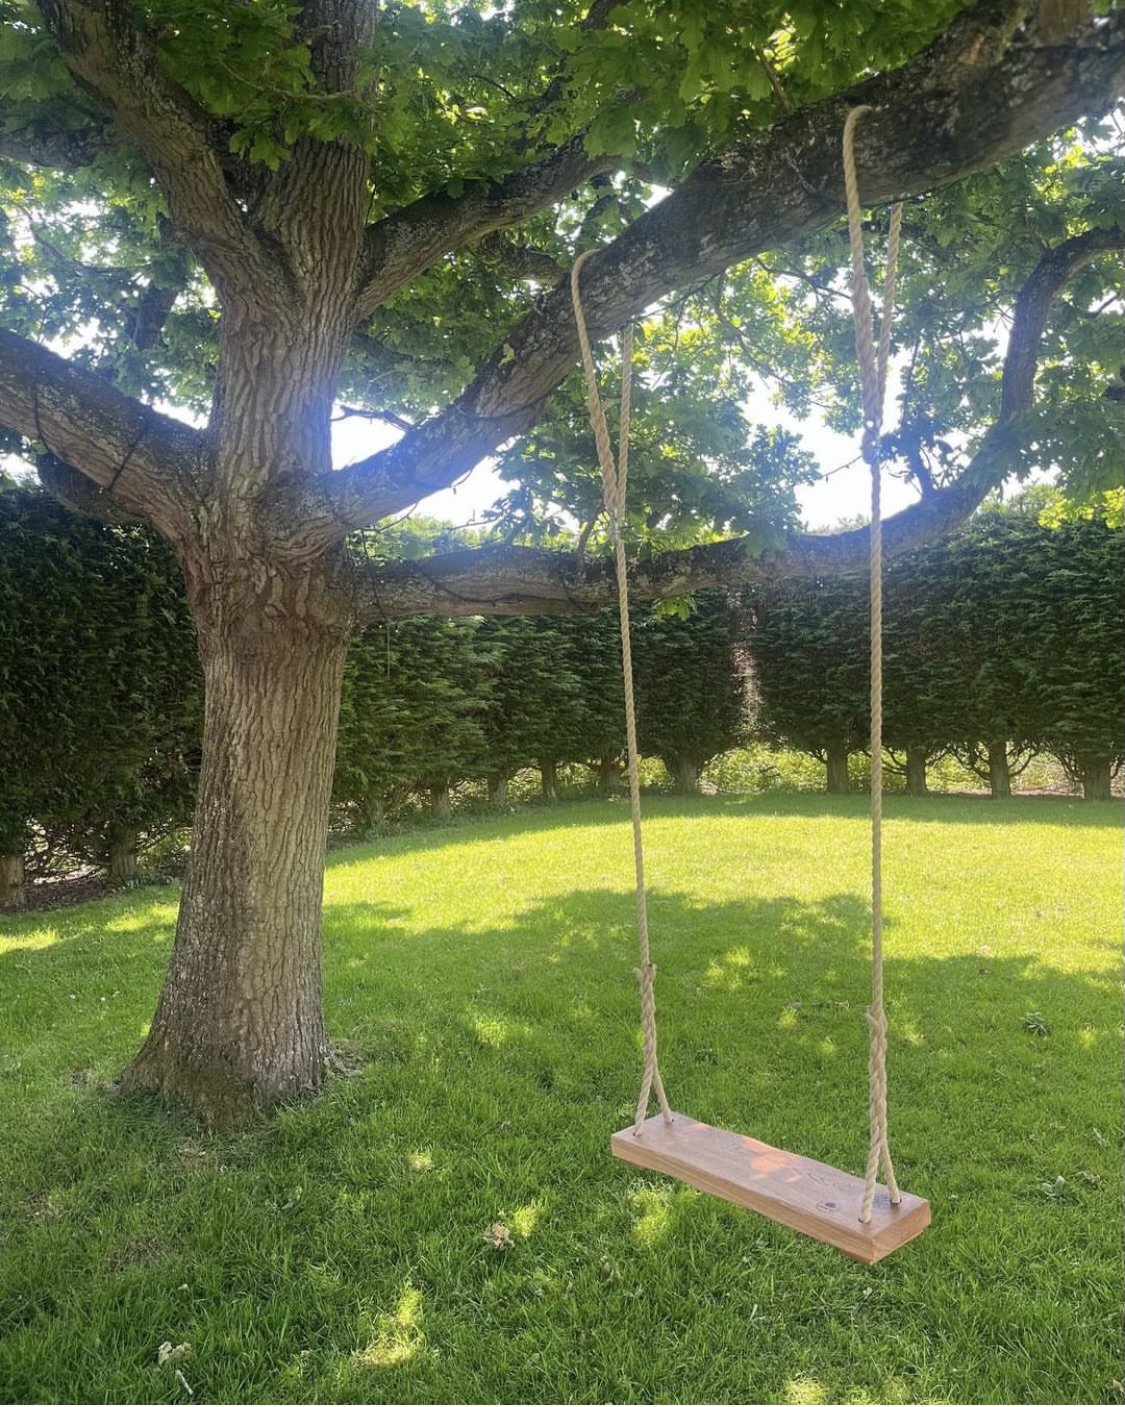 Tree swing in the garden